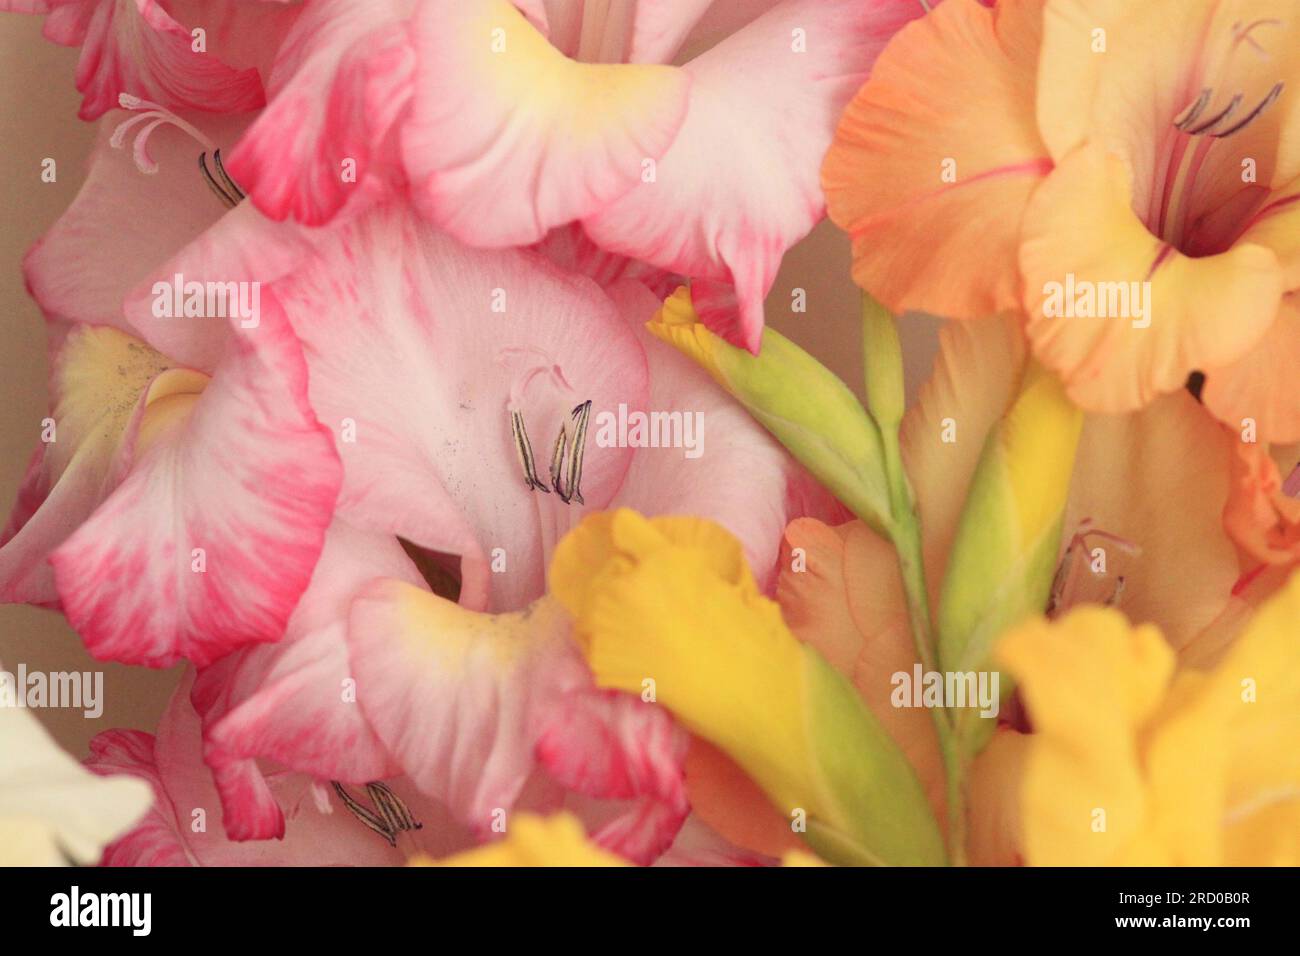 Gros plan des fleurs de gladioli Blush Pink et Apricot Banque D'Images